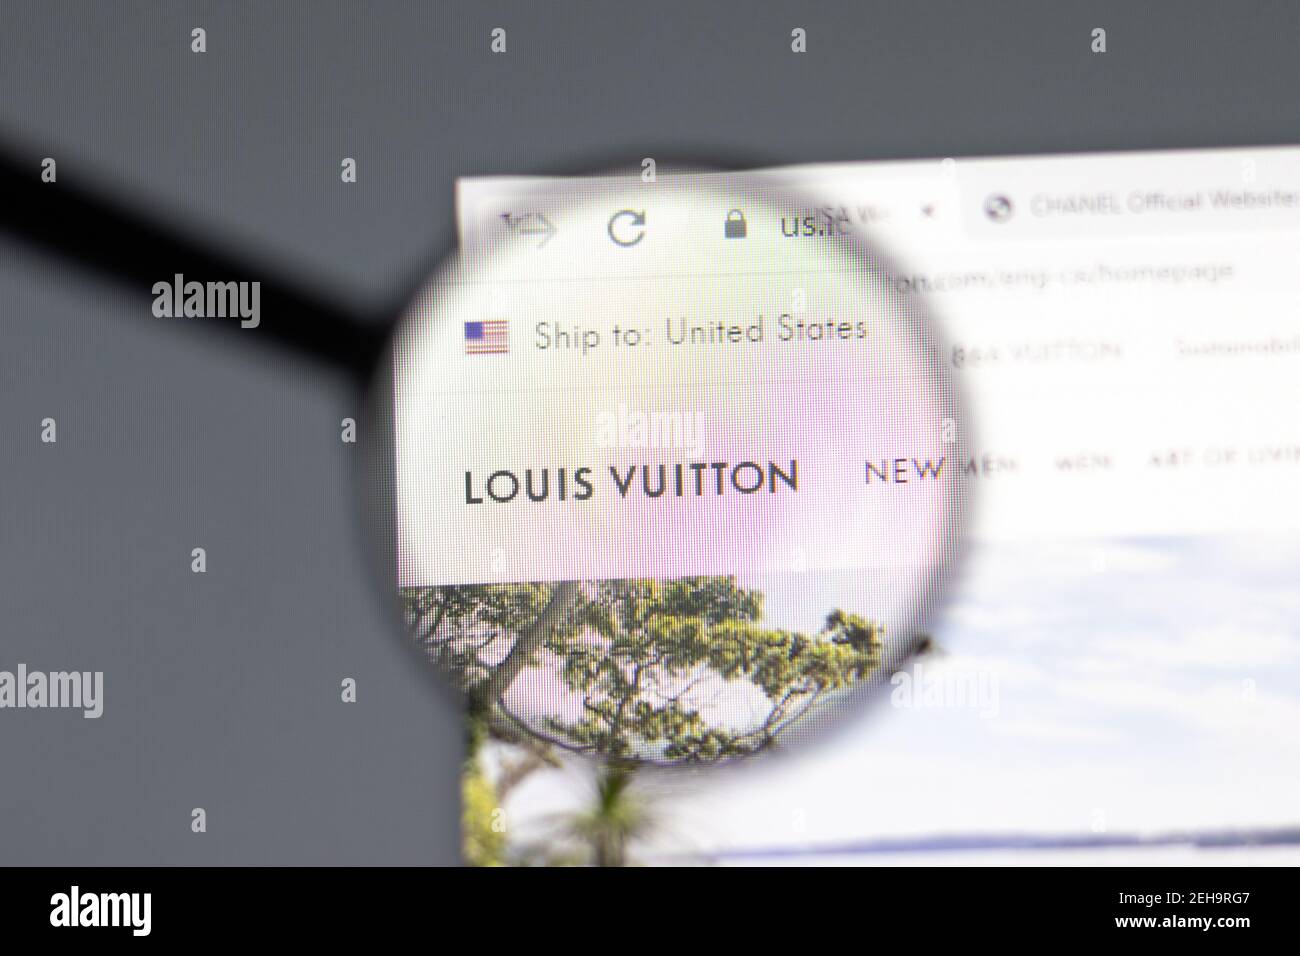 Louis Vuitton Us Official Website